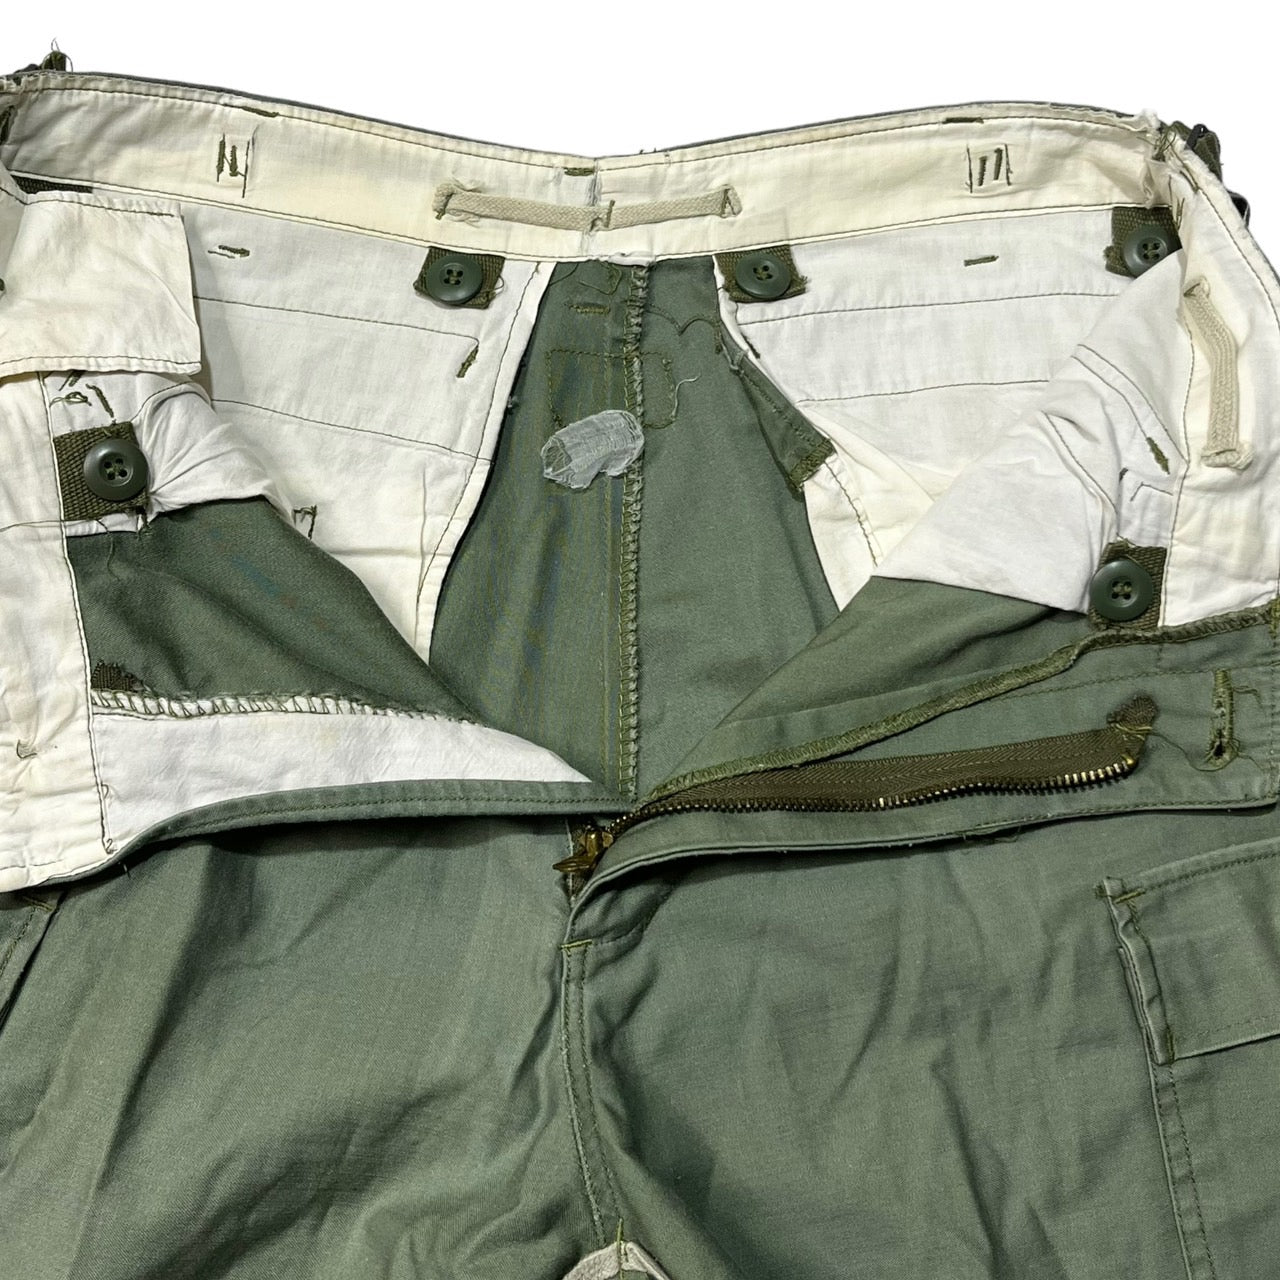 US ARMY(アメリカ軍) 70's M65 cargo pants ミリタリー カーゴパンツ 表記無し カーキ TALONジップ